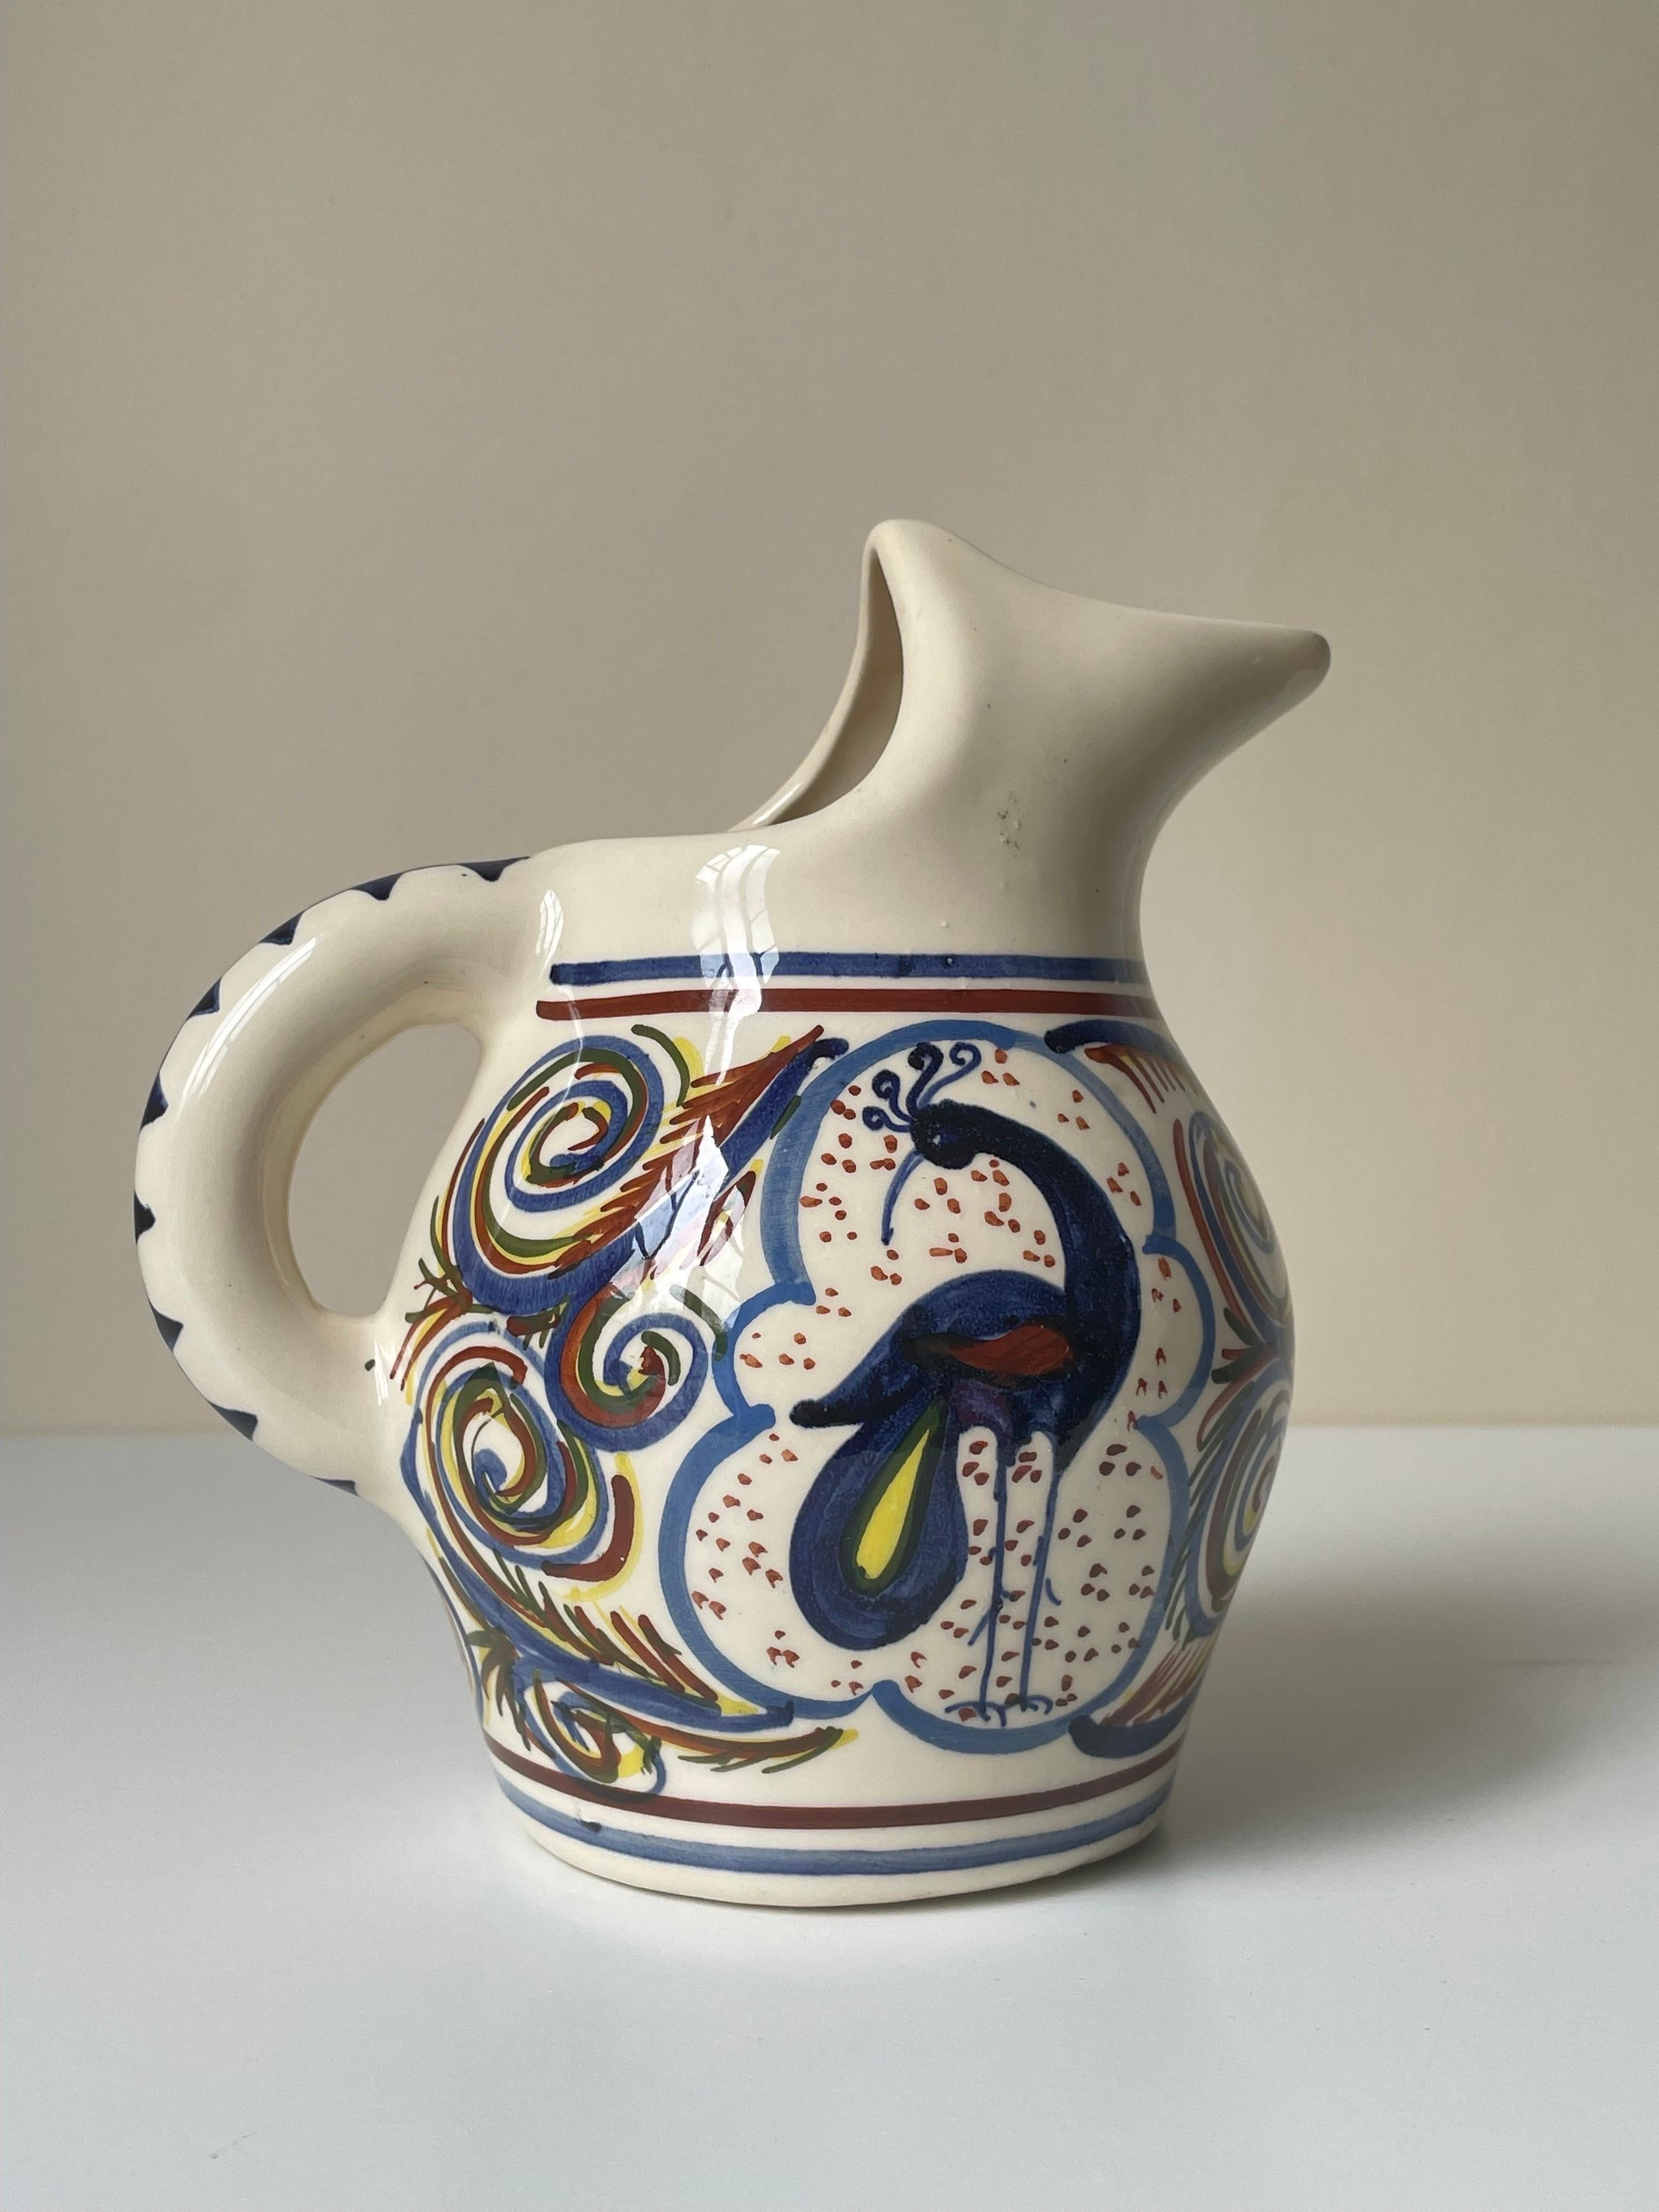 Vase pichet en céramique multicolore peint à la main. Décorée de multiples motifs lignés, tourbillonnants, triangulaires, pointillés et organiques, avec un oiseau paon stylisé au centre de chaque côté. Couleurs bleues, brunes et jaunes sous glaçure